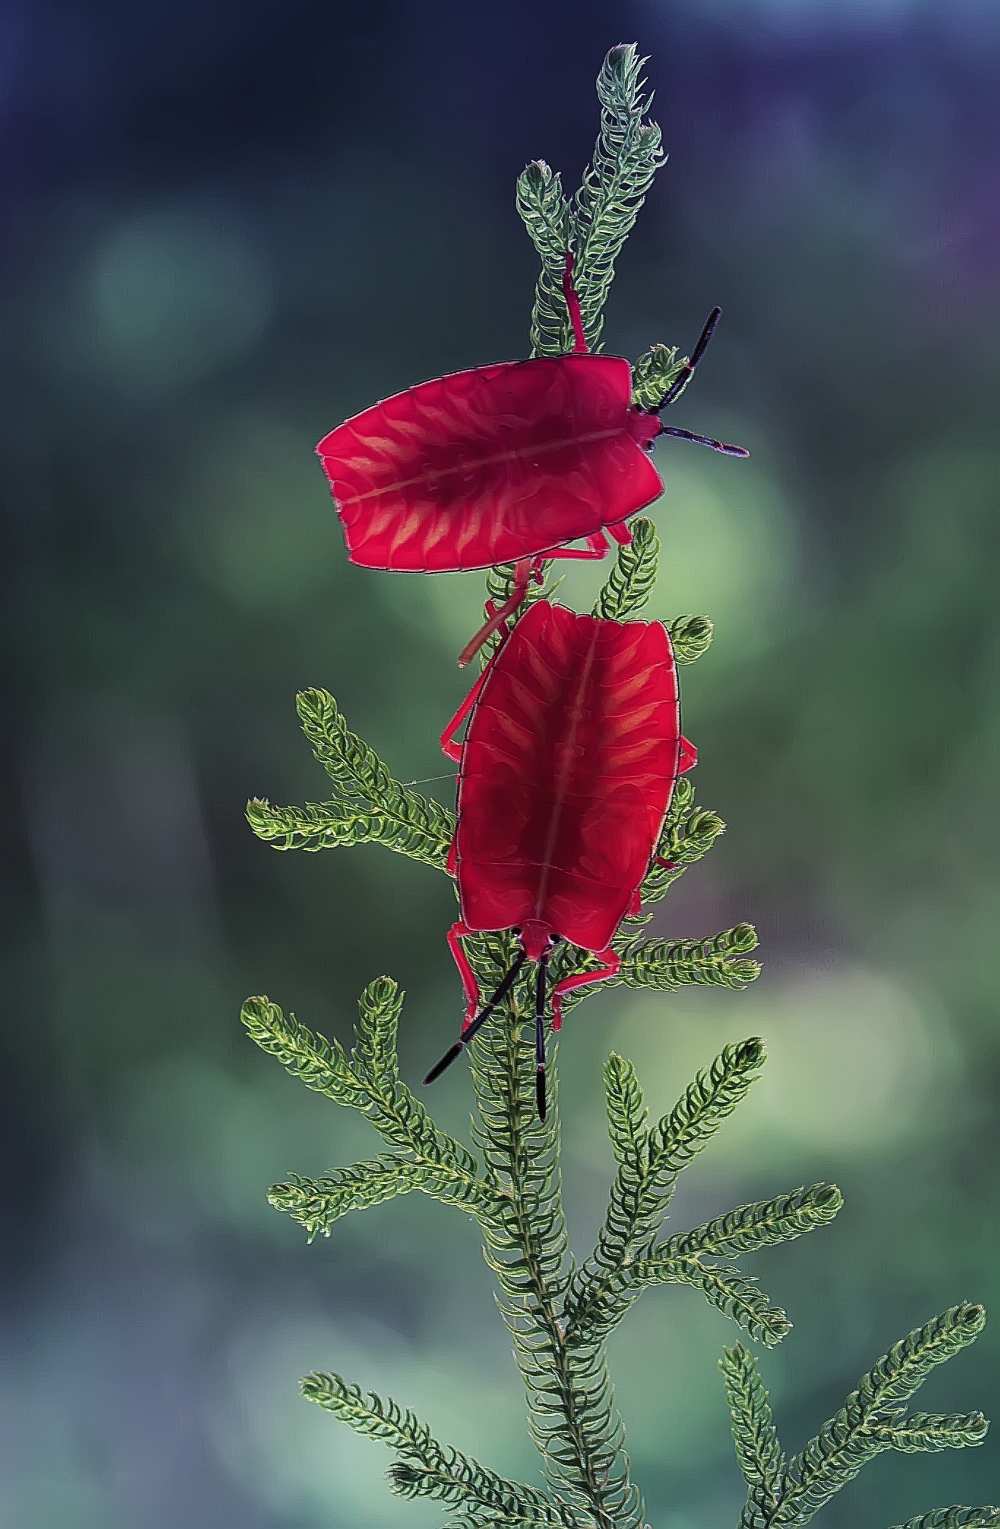 Red Ladybug de Abdul Gapur Dayak